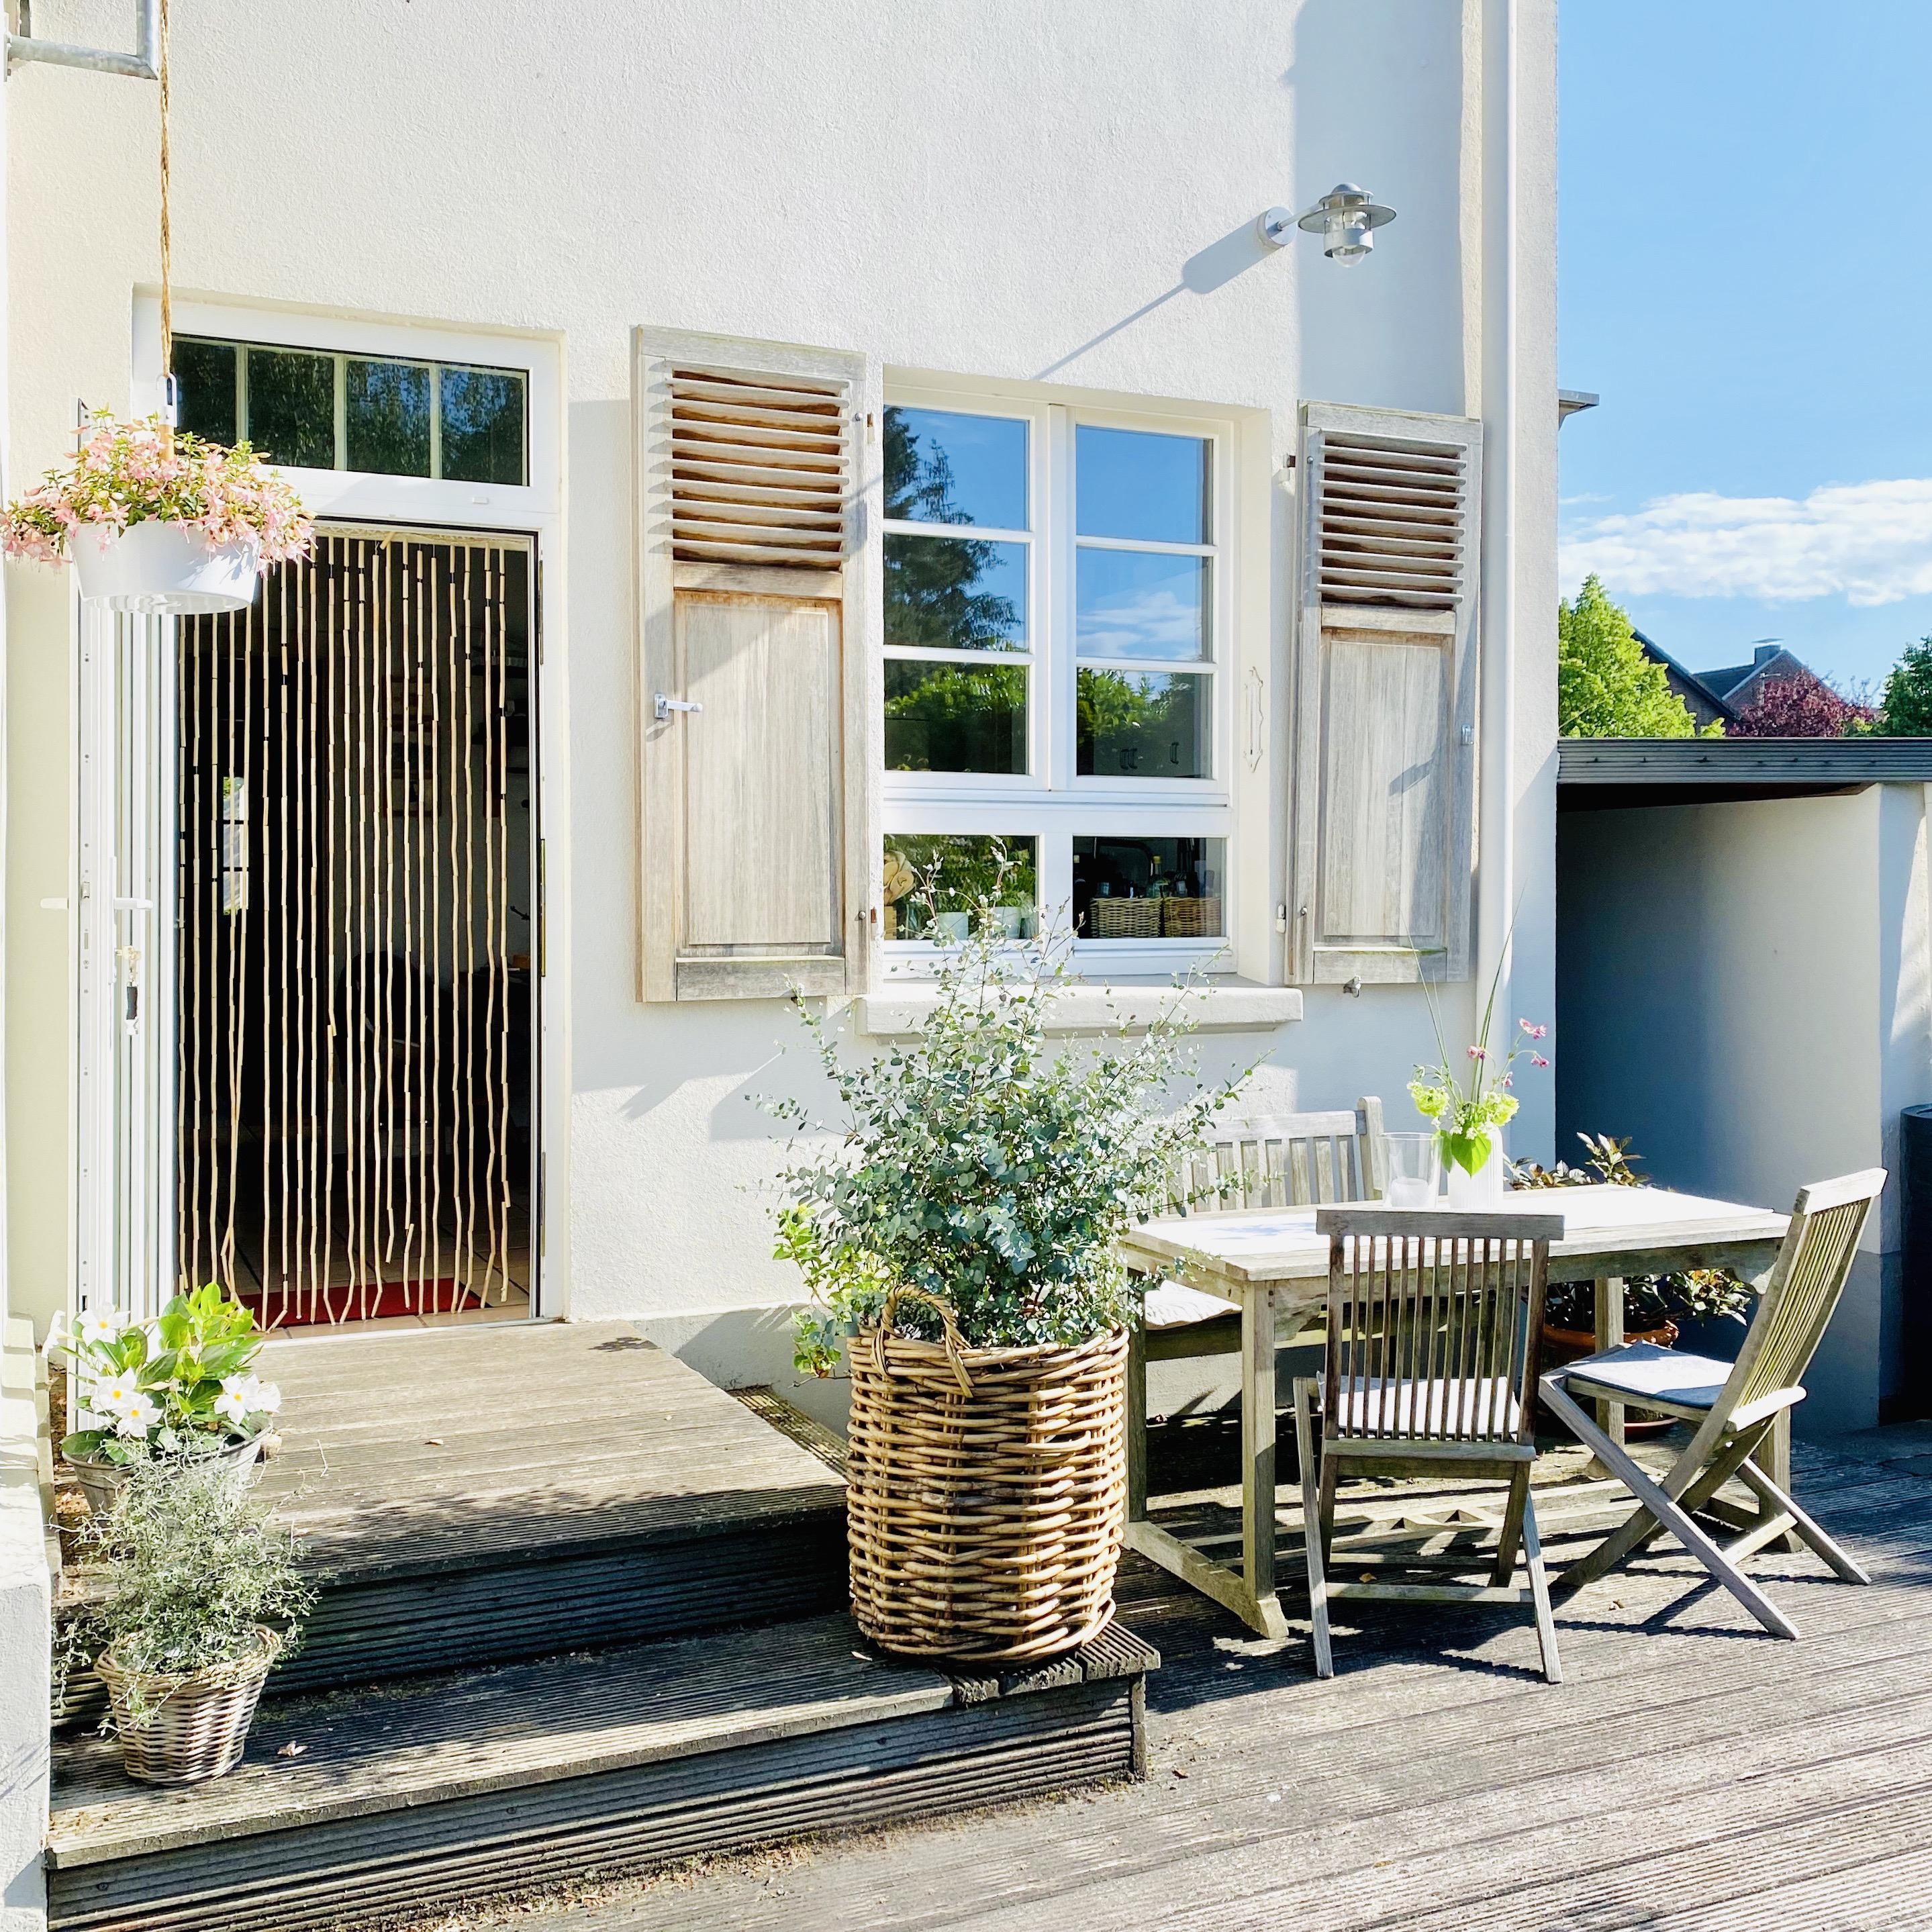 Sommer, Sonne & Terrassenliebe...
#terrasse #outdoorgoals #eukalyptus #landhausstil #skandinavischwohnen